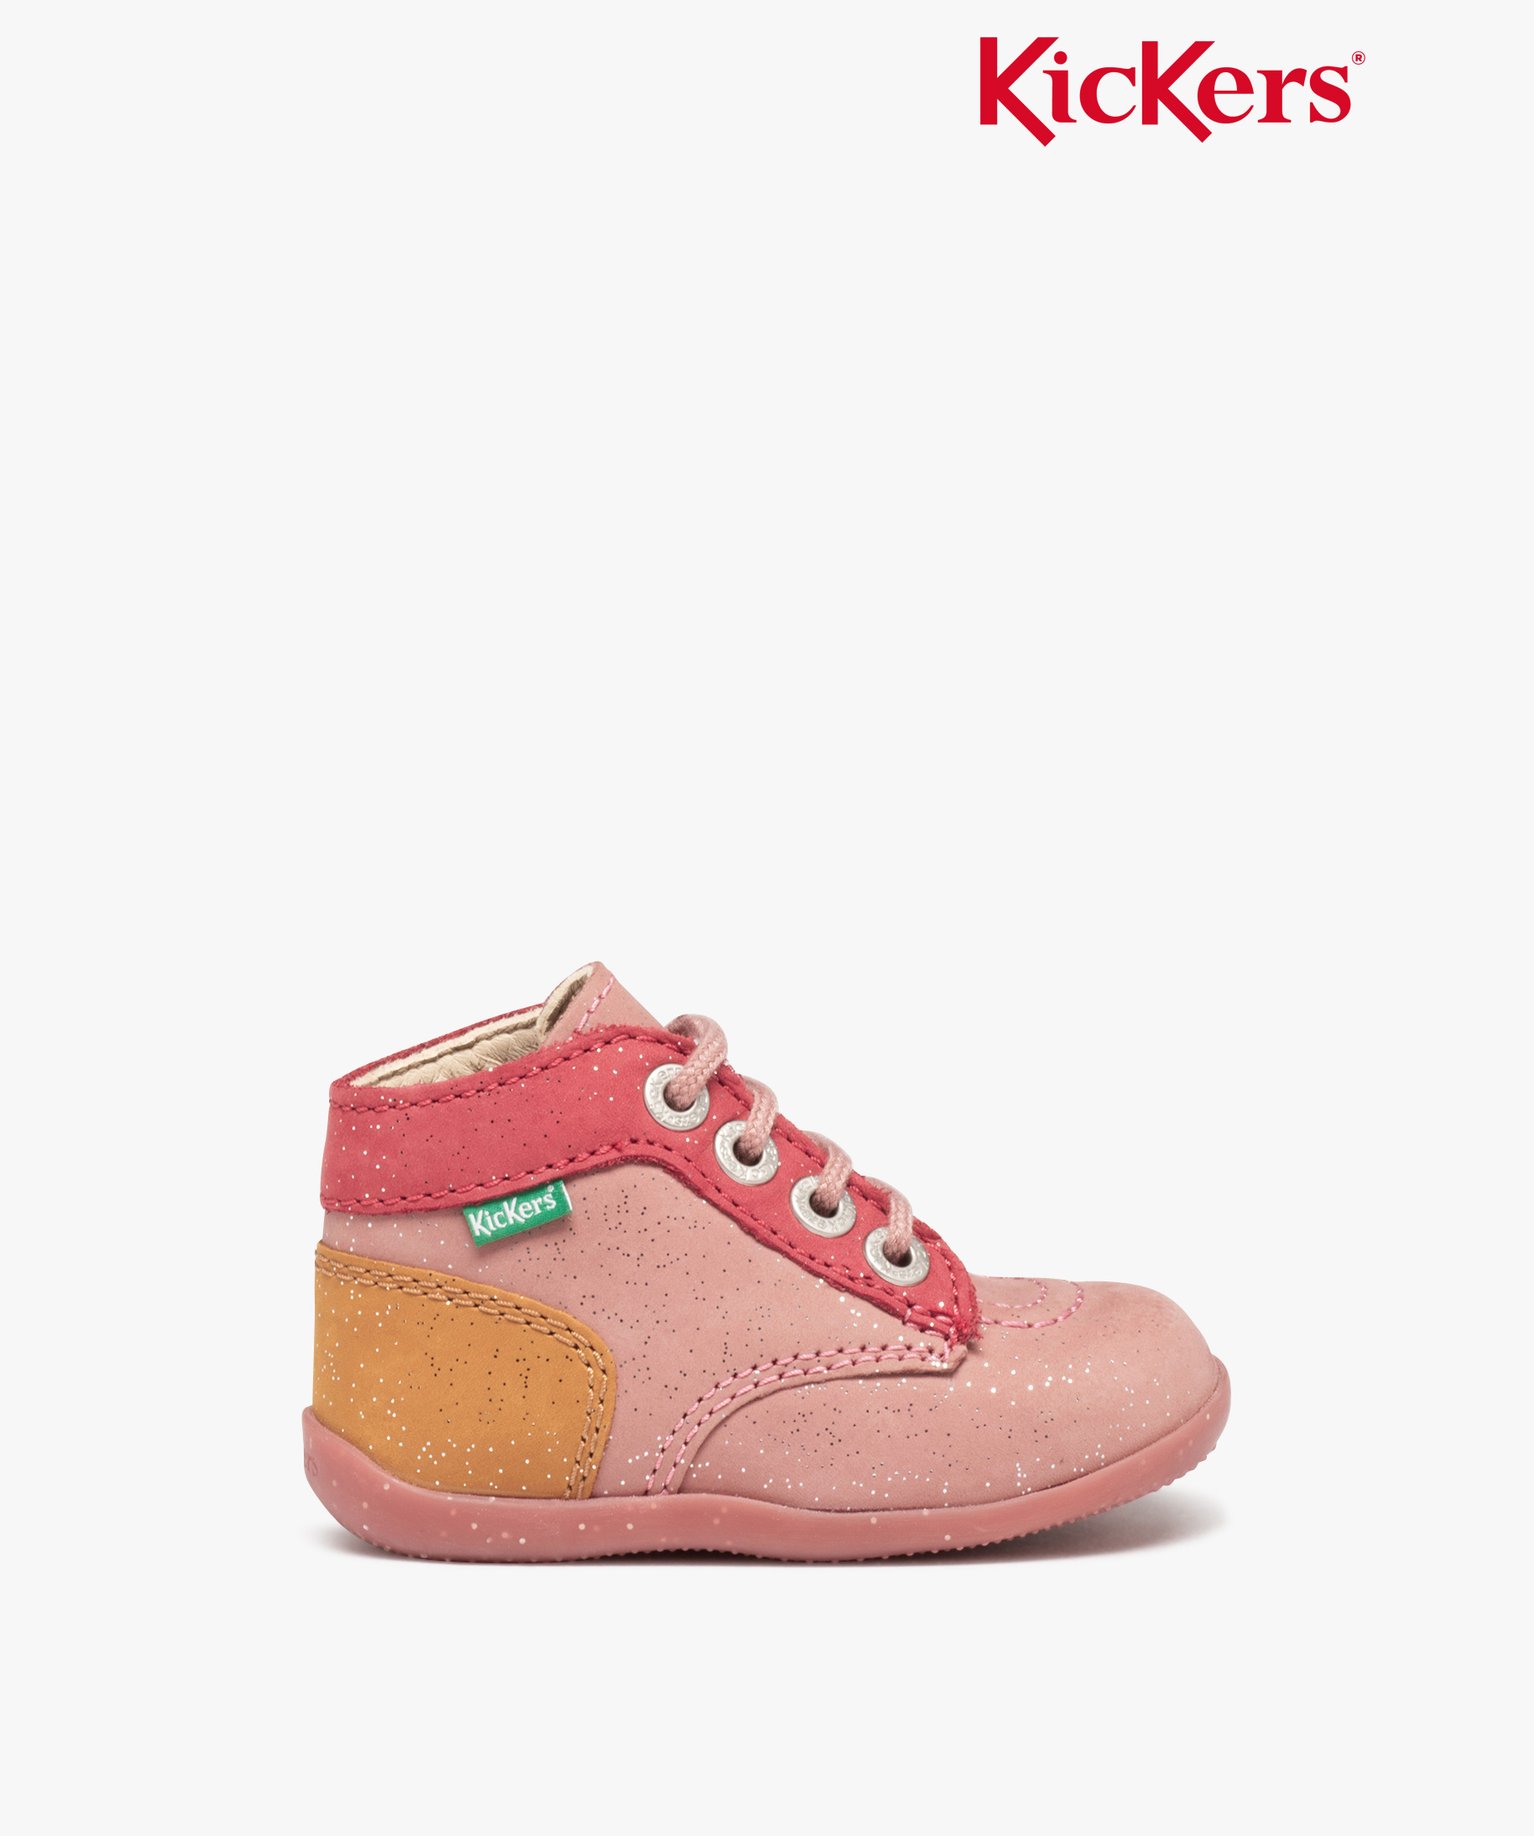 Chaussures premiers pas bébé fille en cuir multicolores - Kickers - 21 - rose - KICKERS